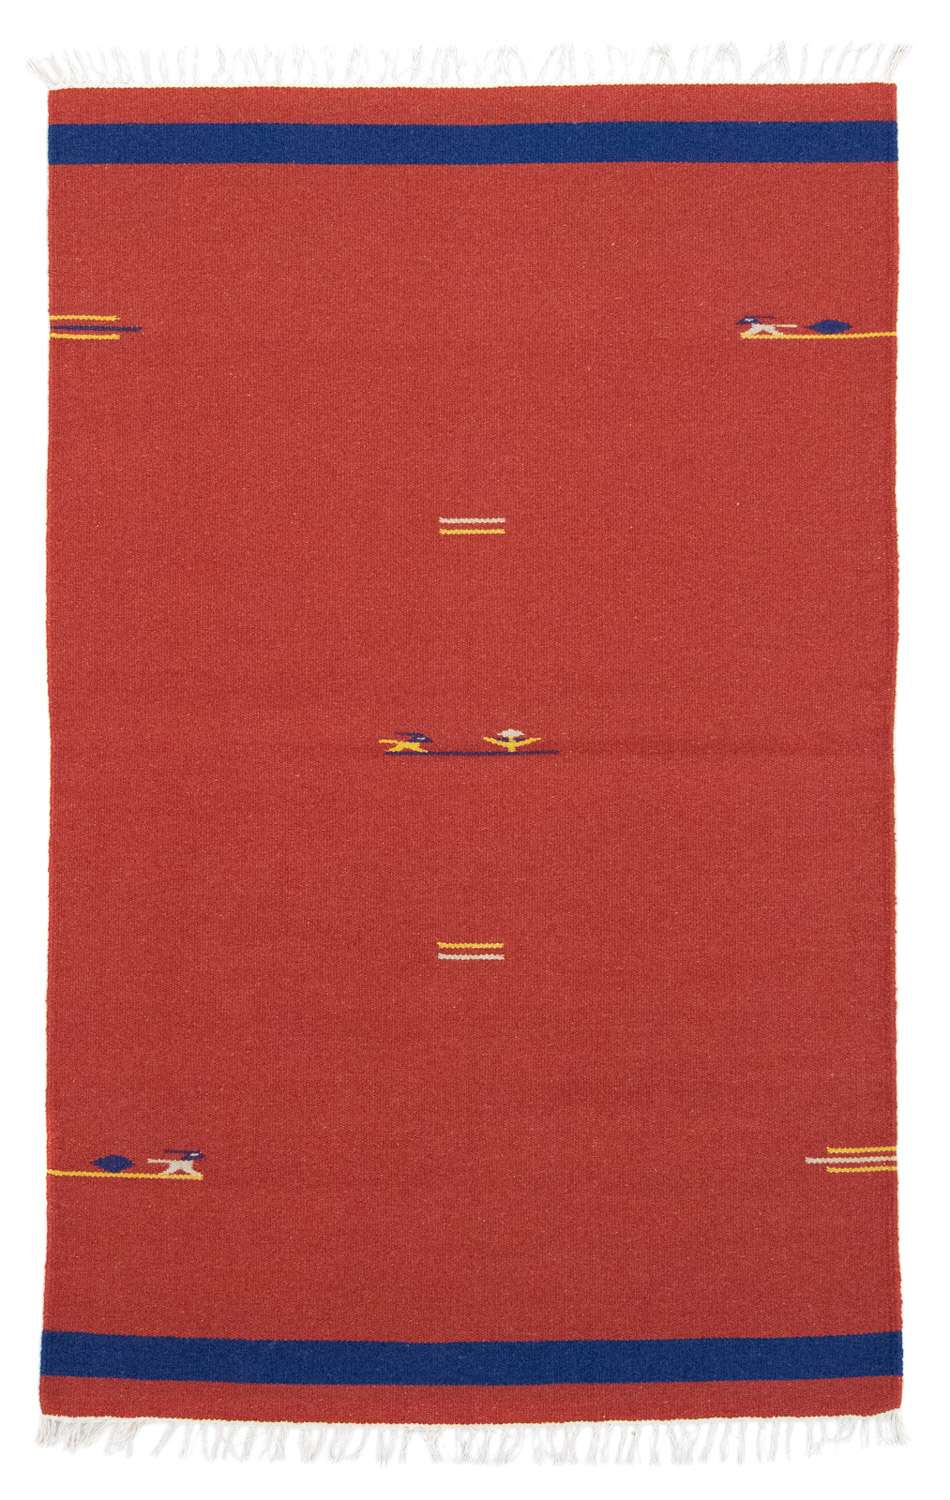 Tappeto Kelim - Tendenza - 180 x 120 cm - rosso